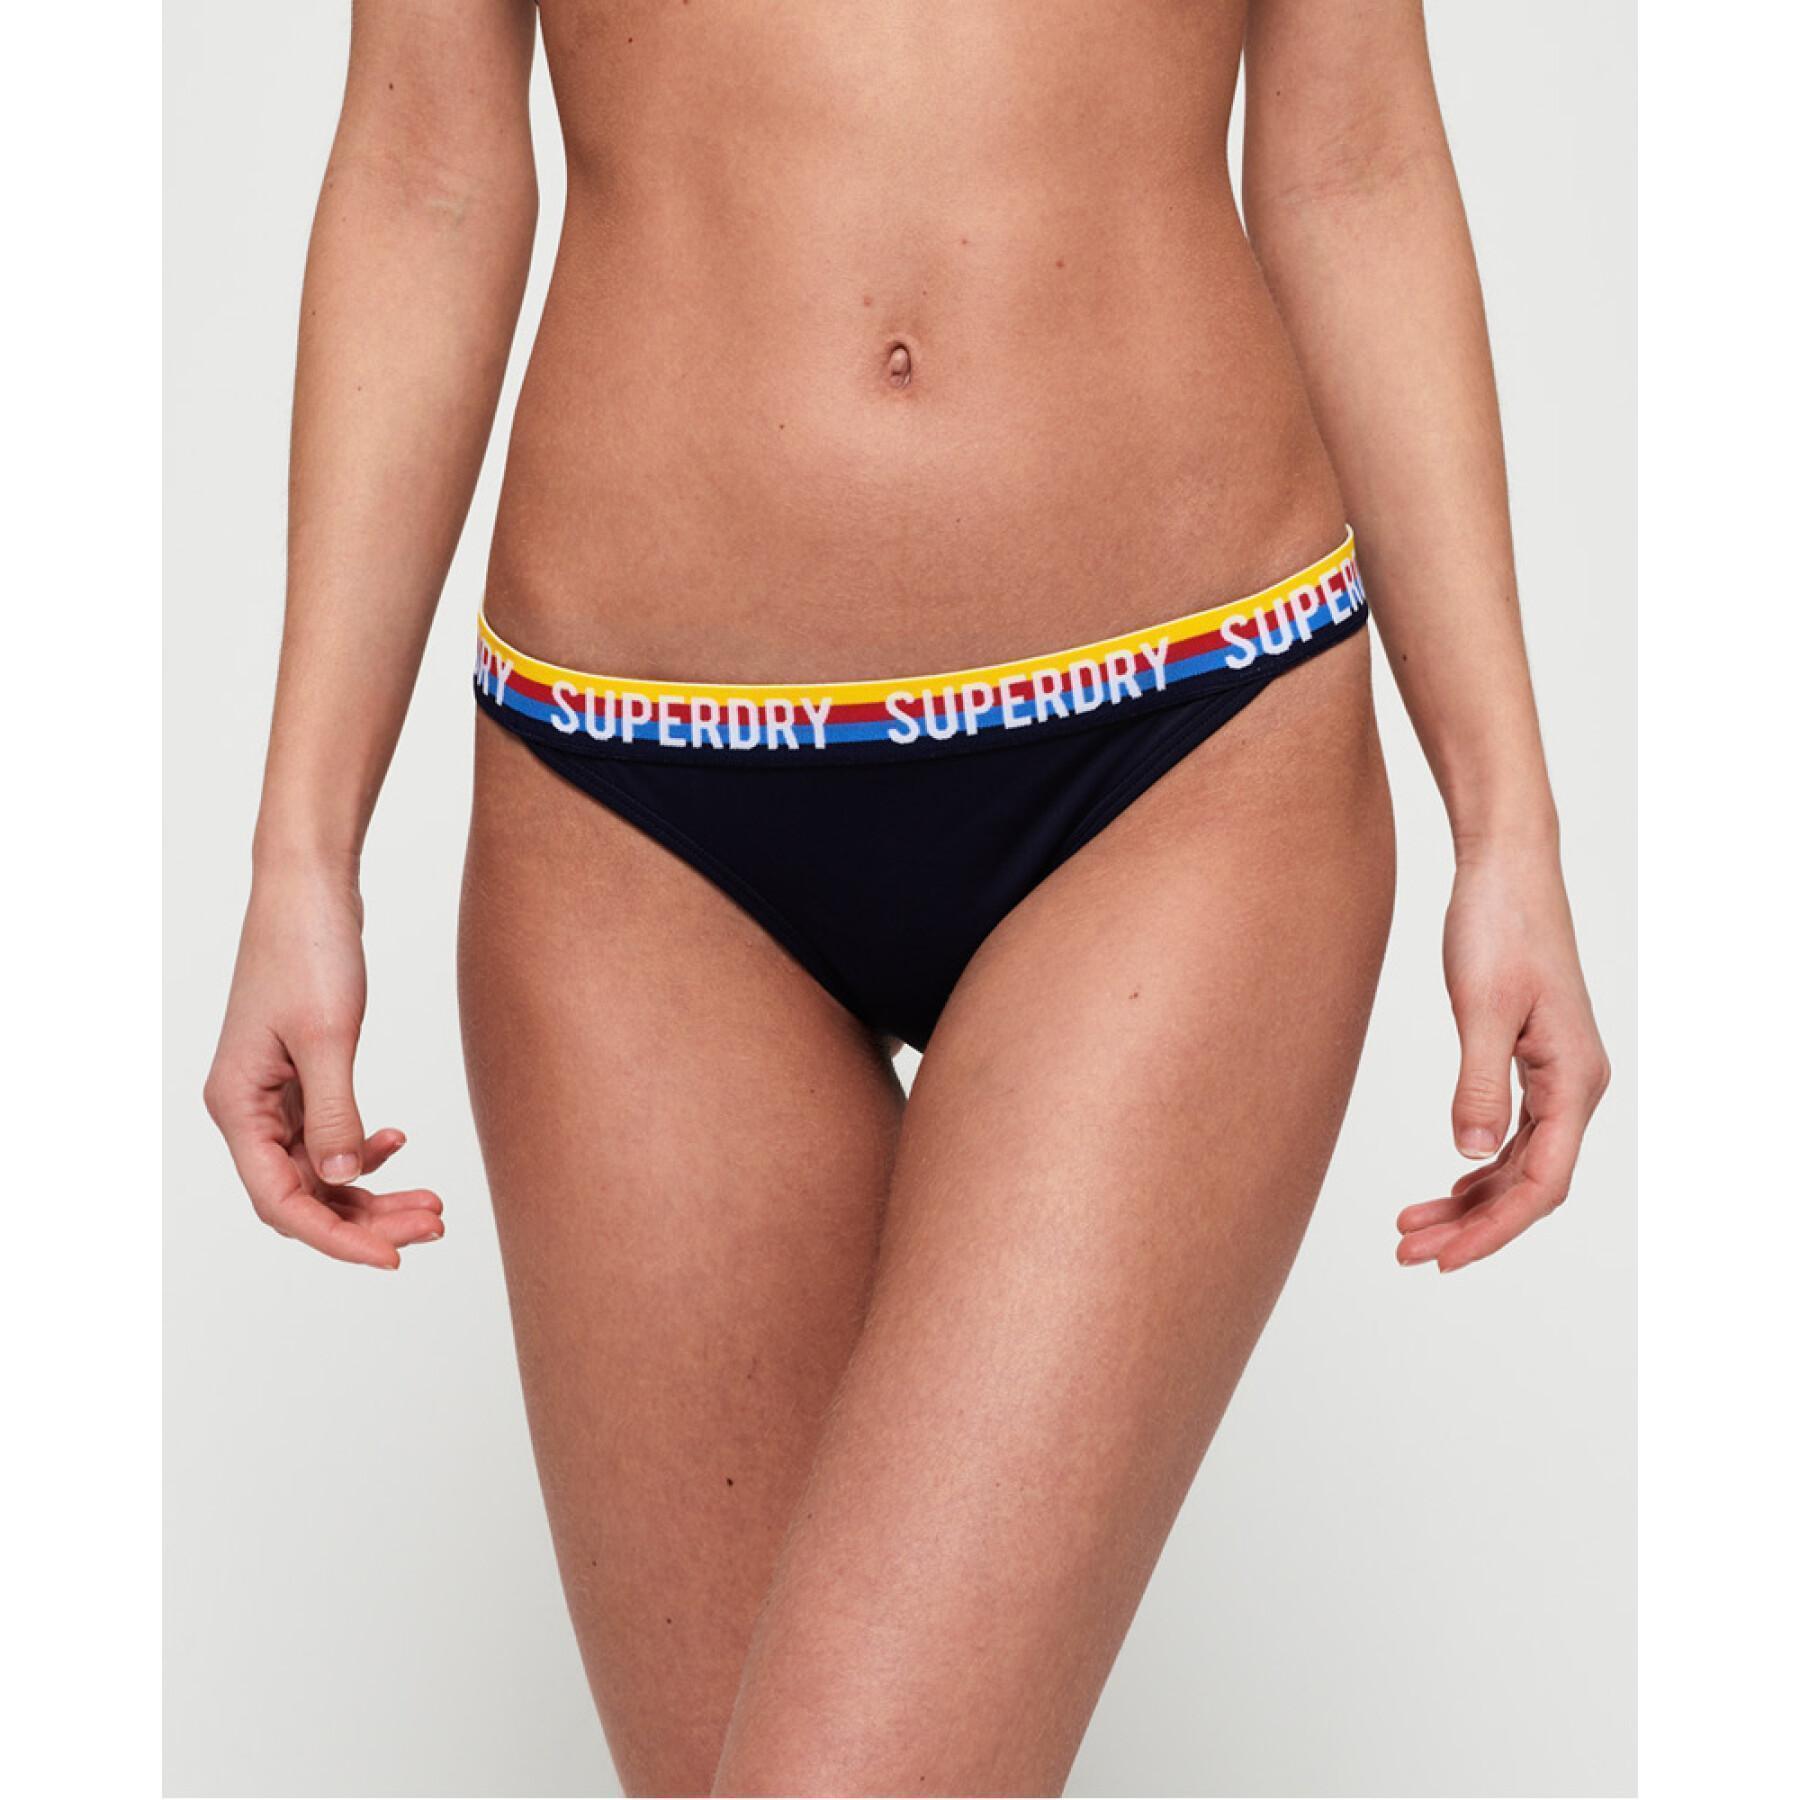 Sydney femme Superdry Bikini Bottom